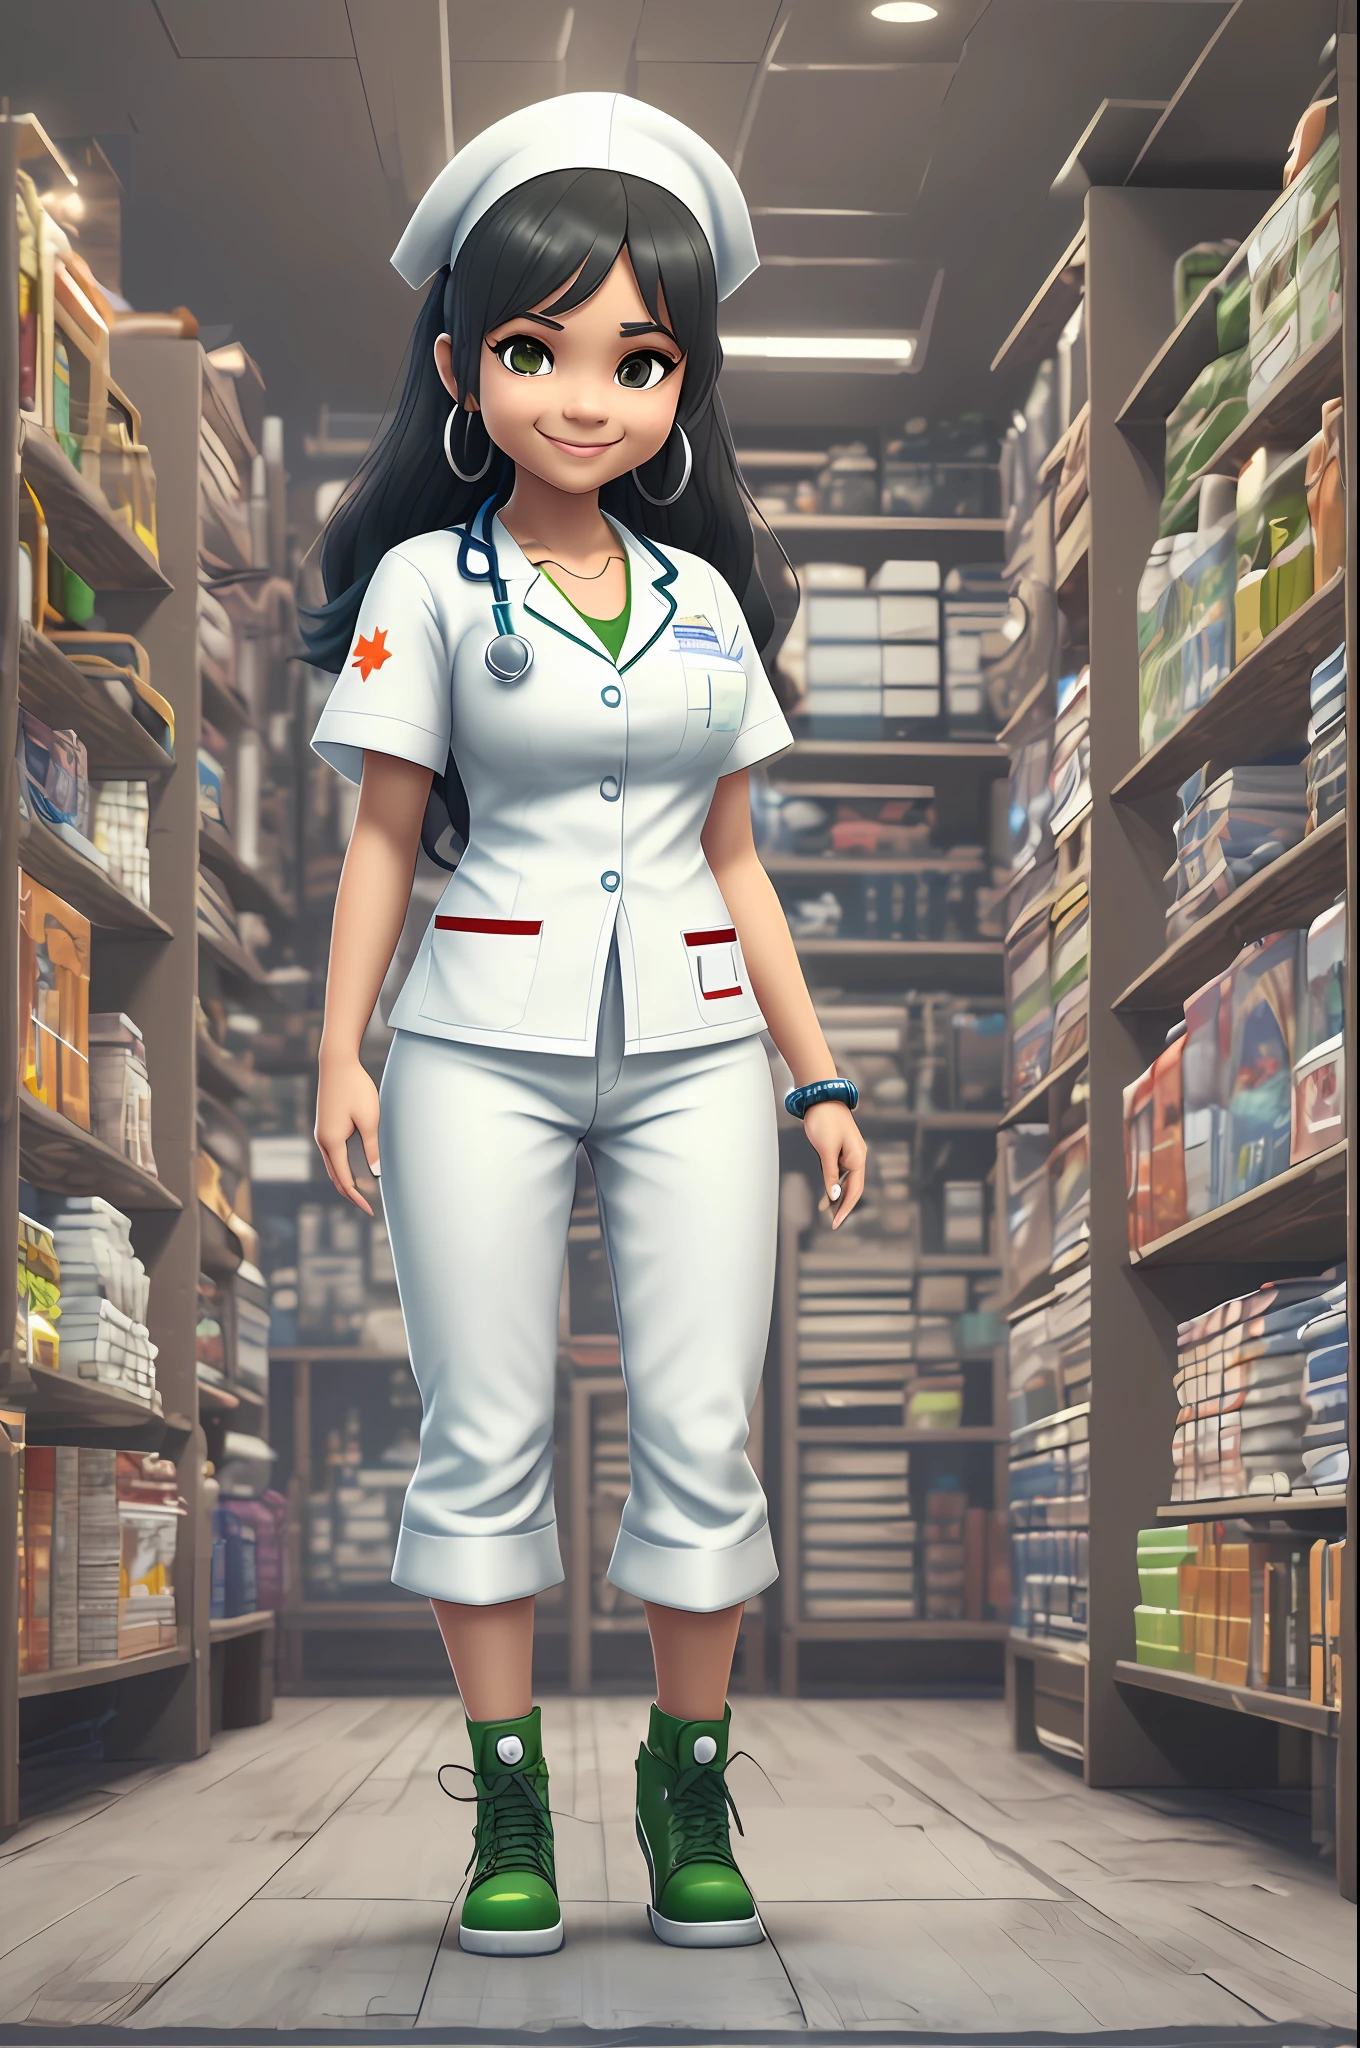 全身ムラート看護師の3D画像, 起立, 白いパンツとかわいい笑顔, 茶色の目, 長い黒髪, ちびとディズニースタイルの小さな緑と青のアクセントが付いた白いナース服を着ている, 背景なし, 詳細, 超高解像度, 8k, Quixel Megascansのスタイル, 3DスキャンストアとEpic Games